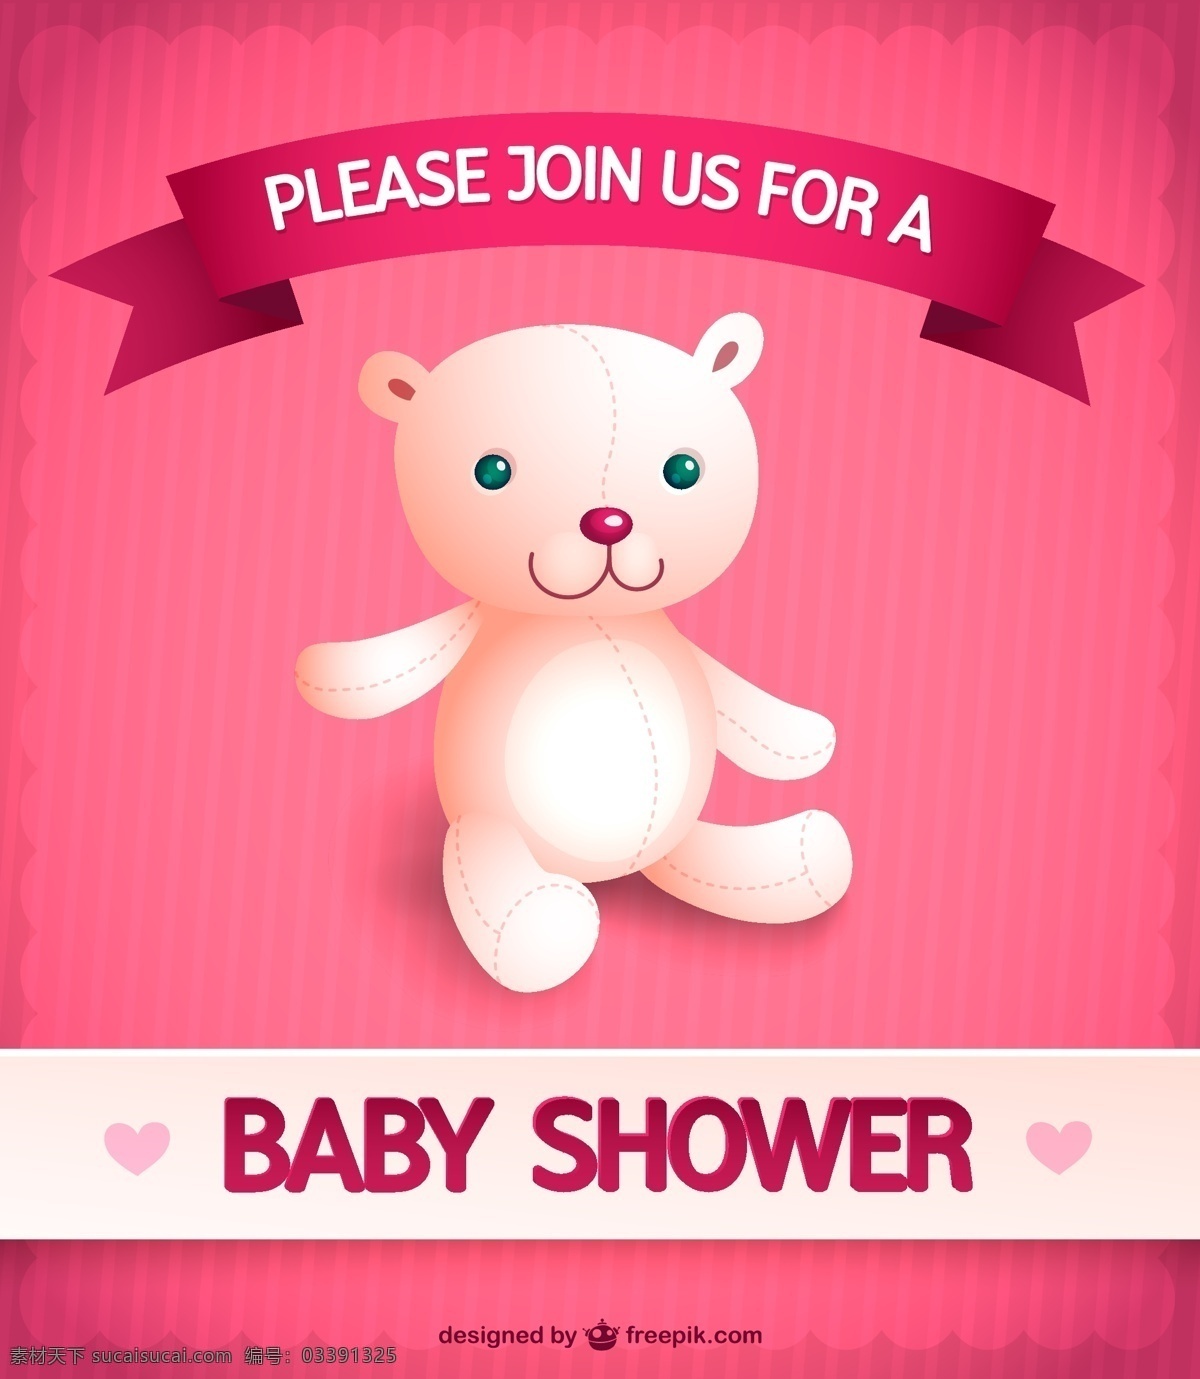 婴儿 女孩 淋浴 邀请 丝带 派对 礼品 婴儿淋浴 模板 微笑 快乐 粉红色 熊 布局 婴儿女孩 有趣 玩具 插图 玩具熊 公告 粉色